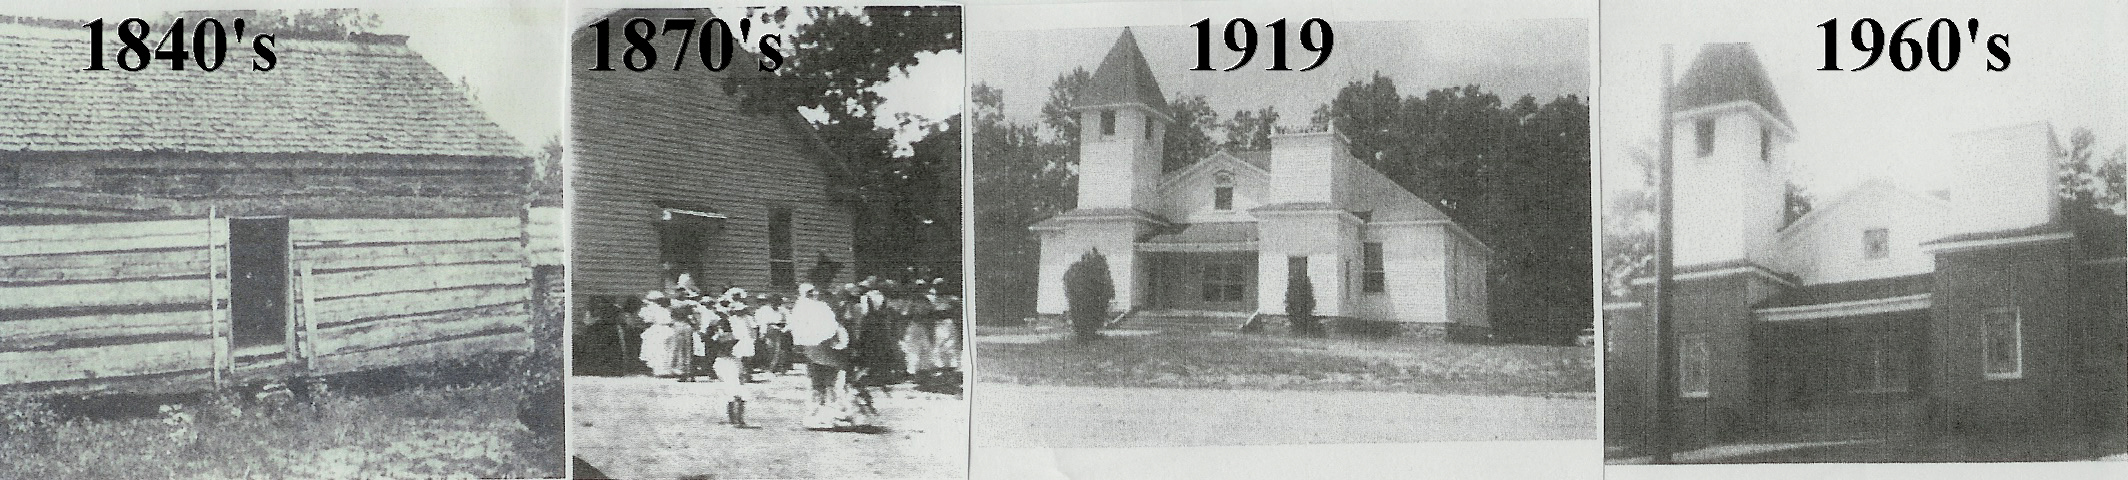 Friendship church through the years